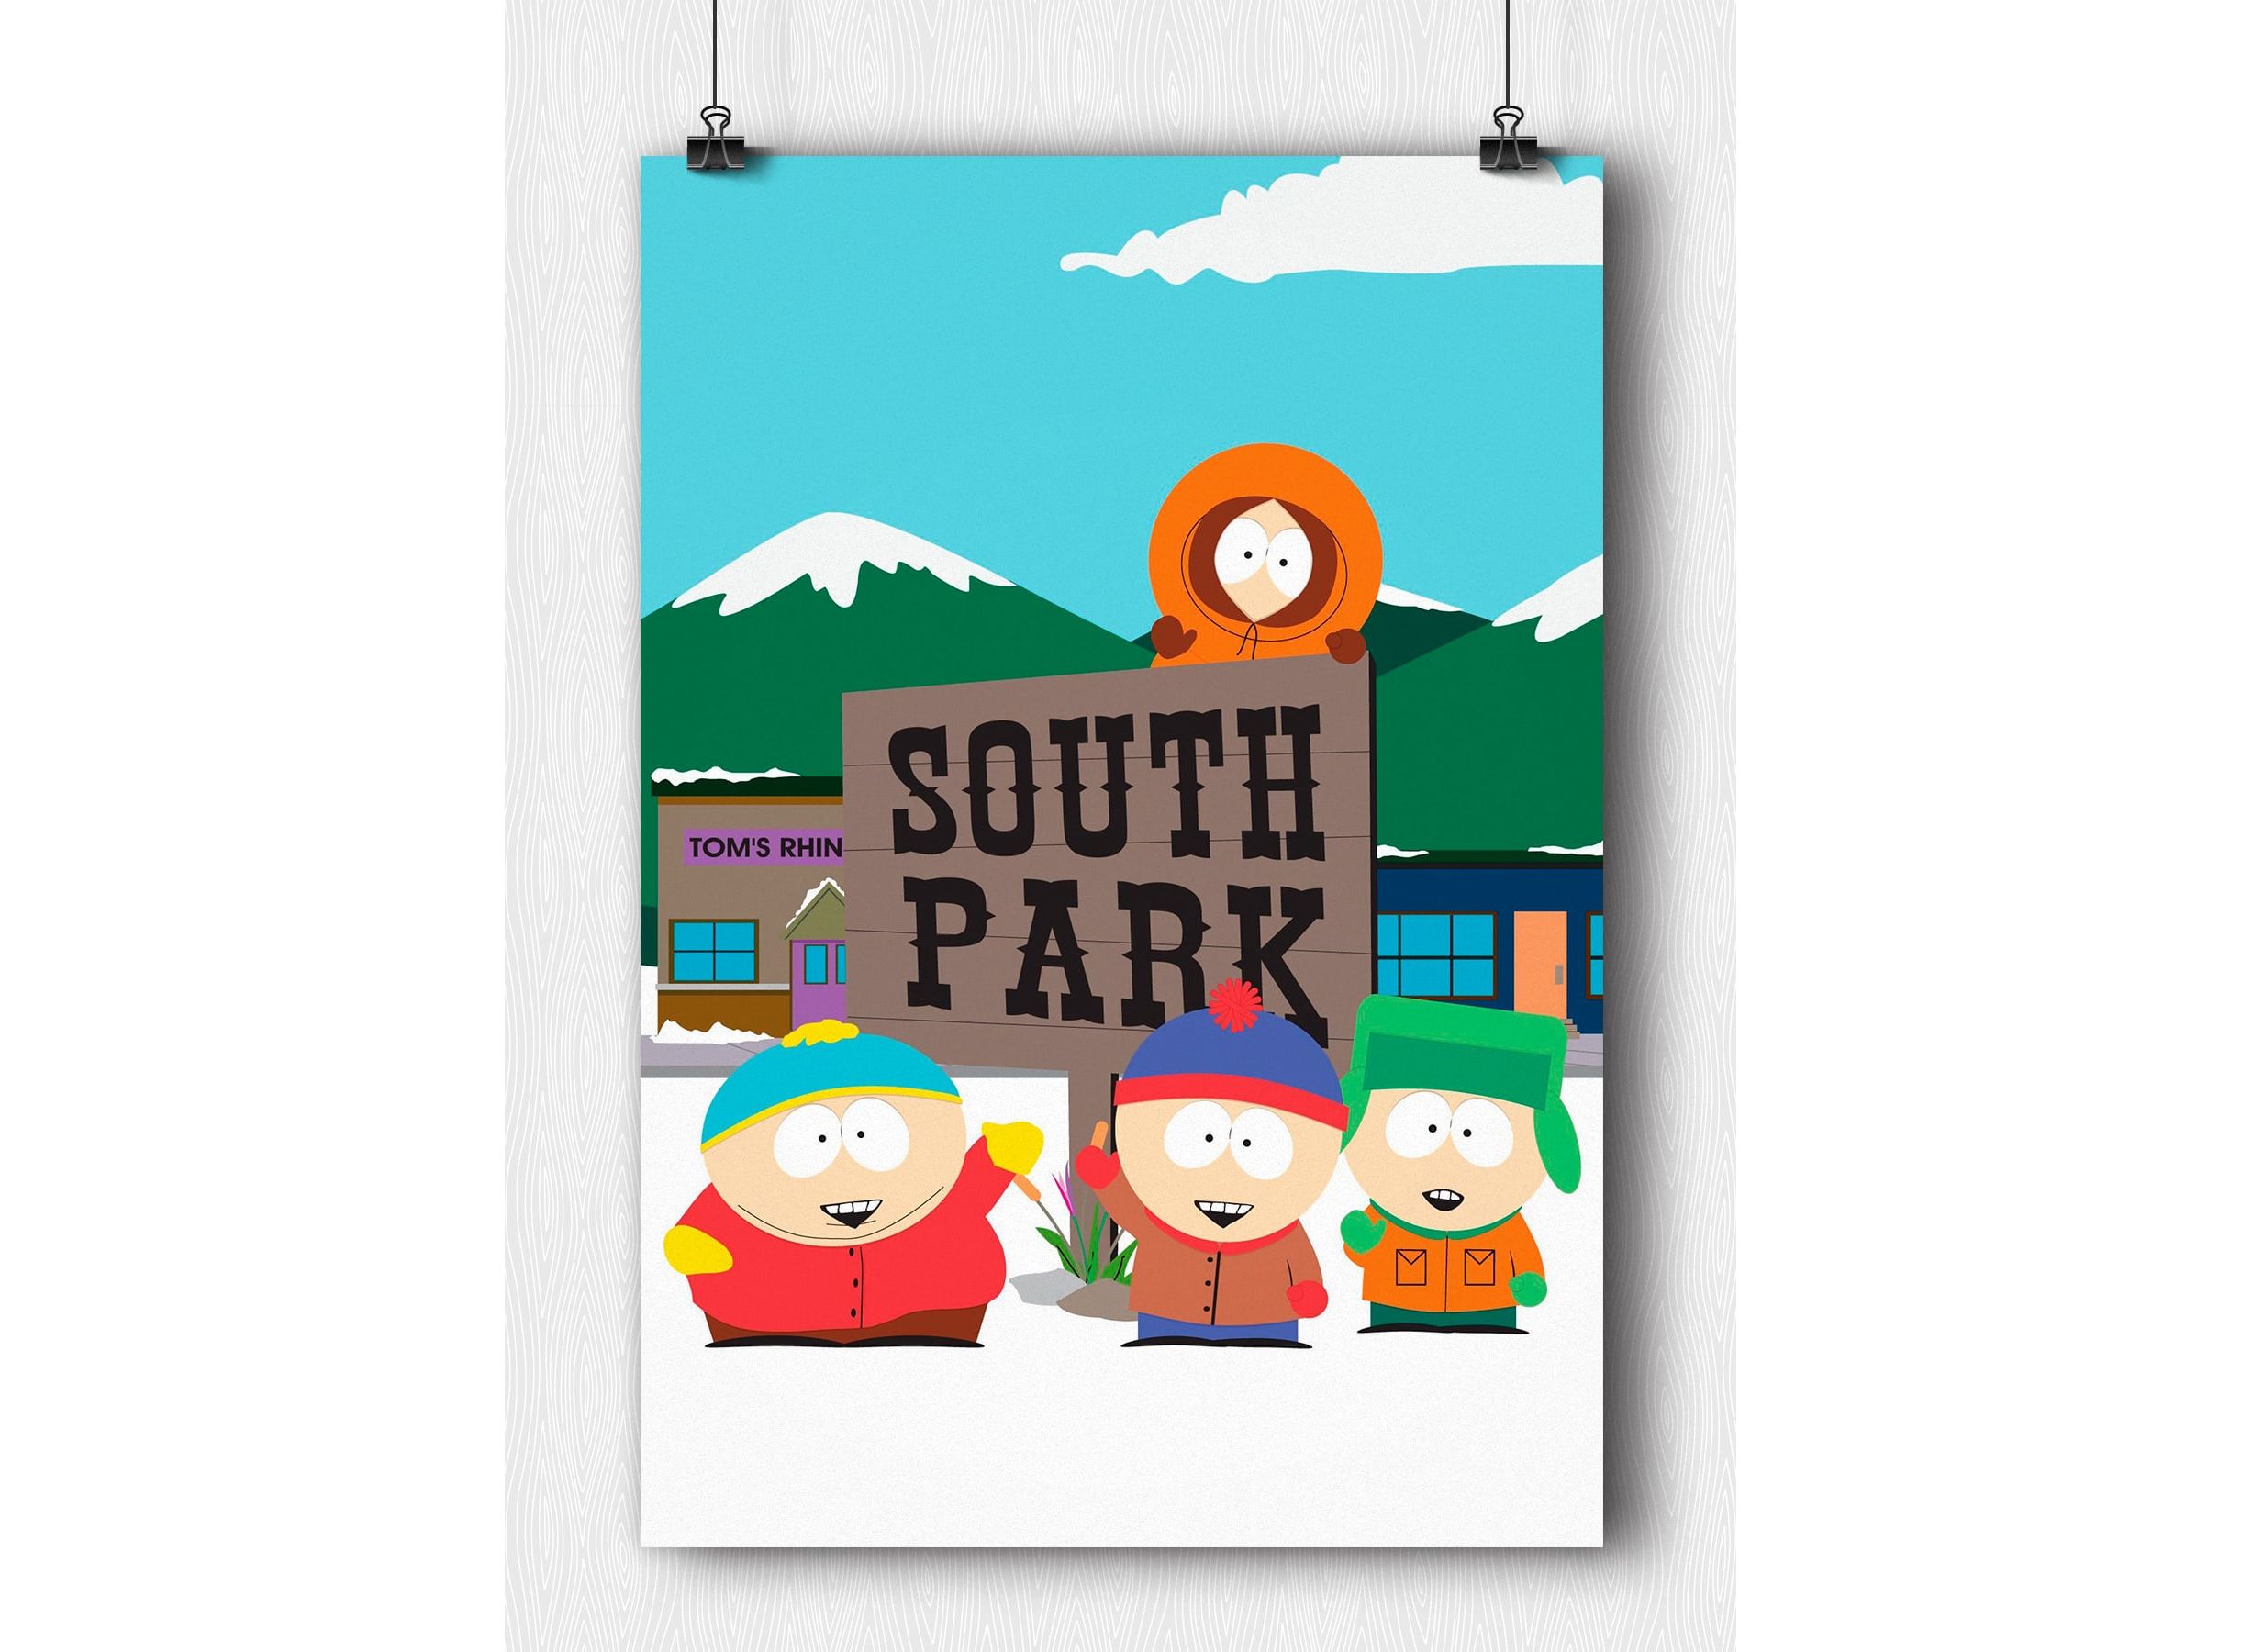 Фотографии объекта «Южный Парк (South Park City)» (20 шт.)